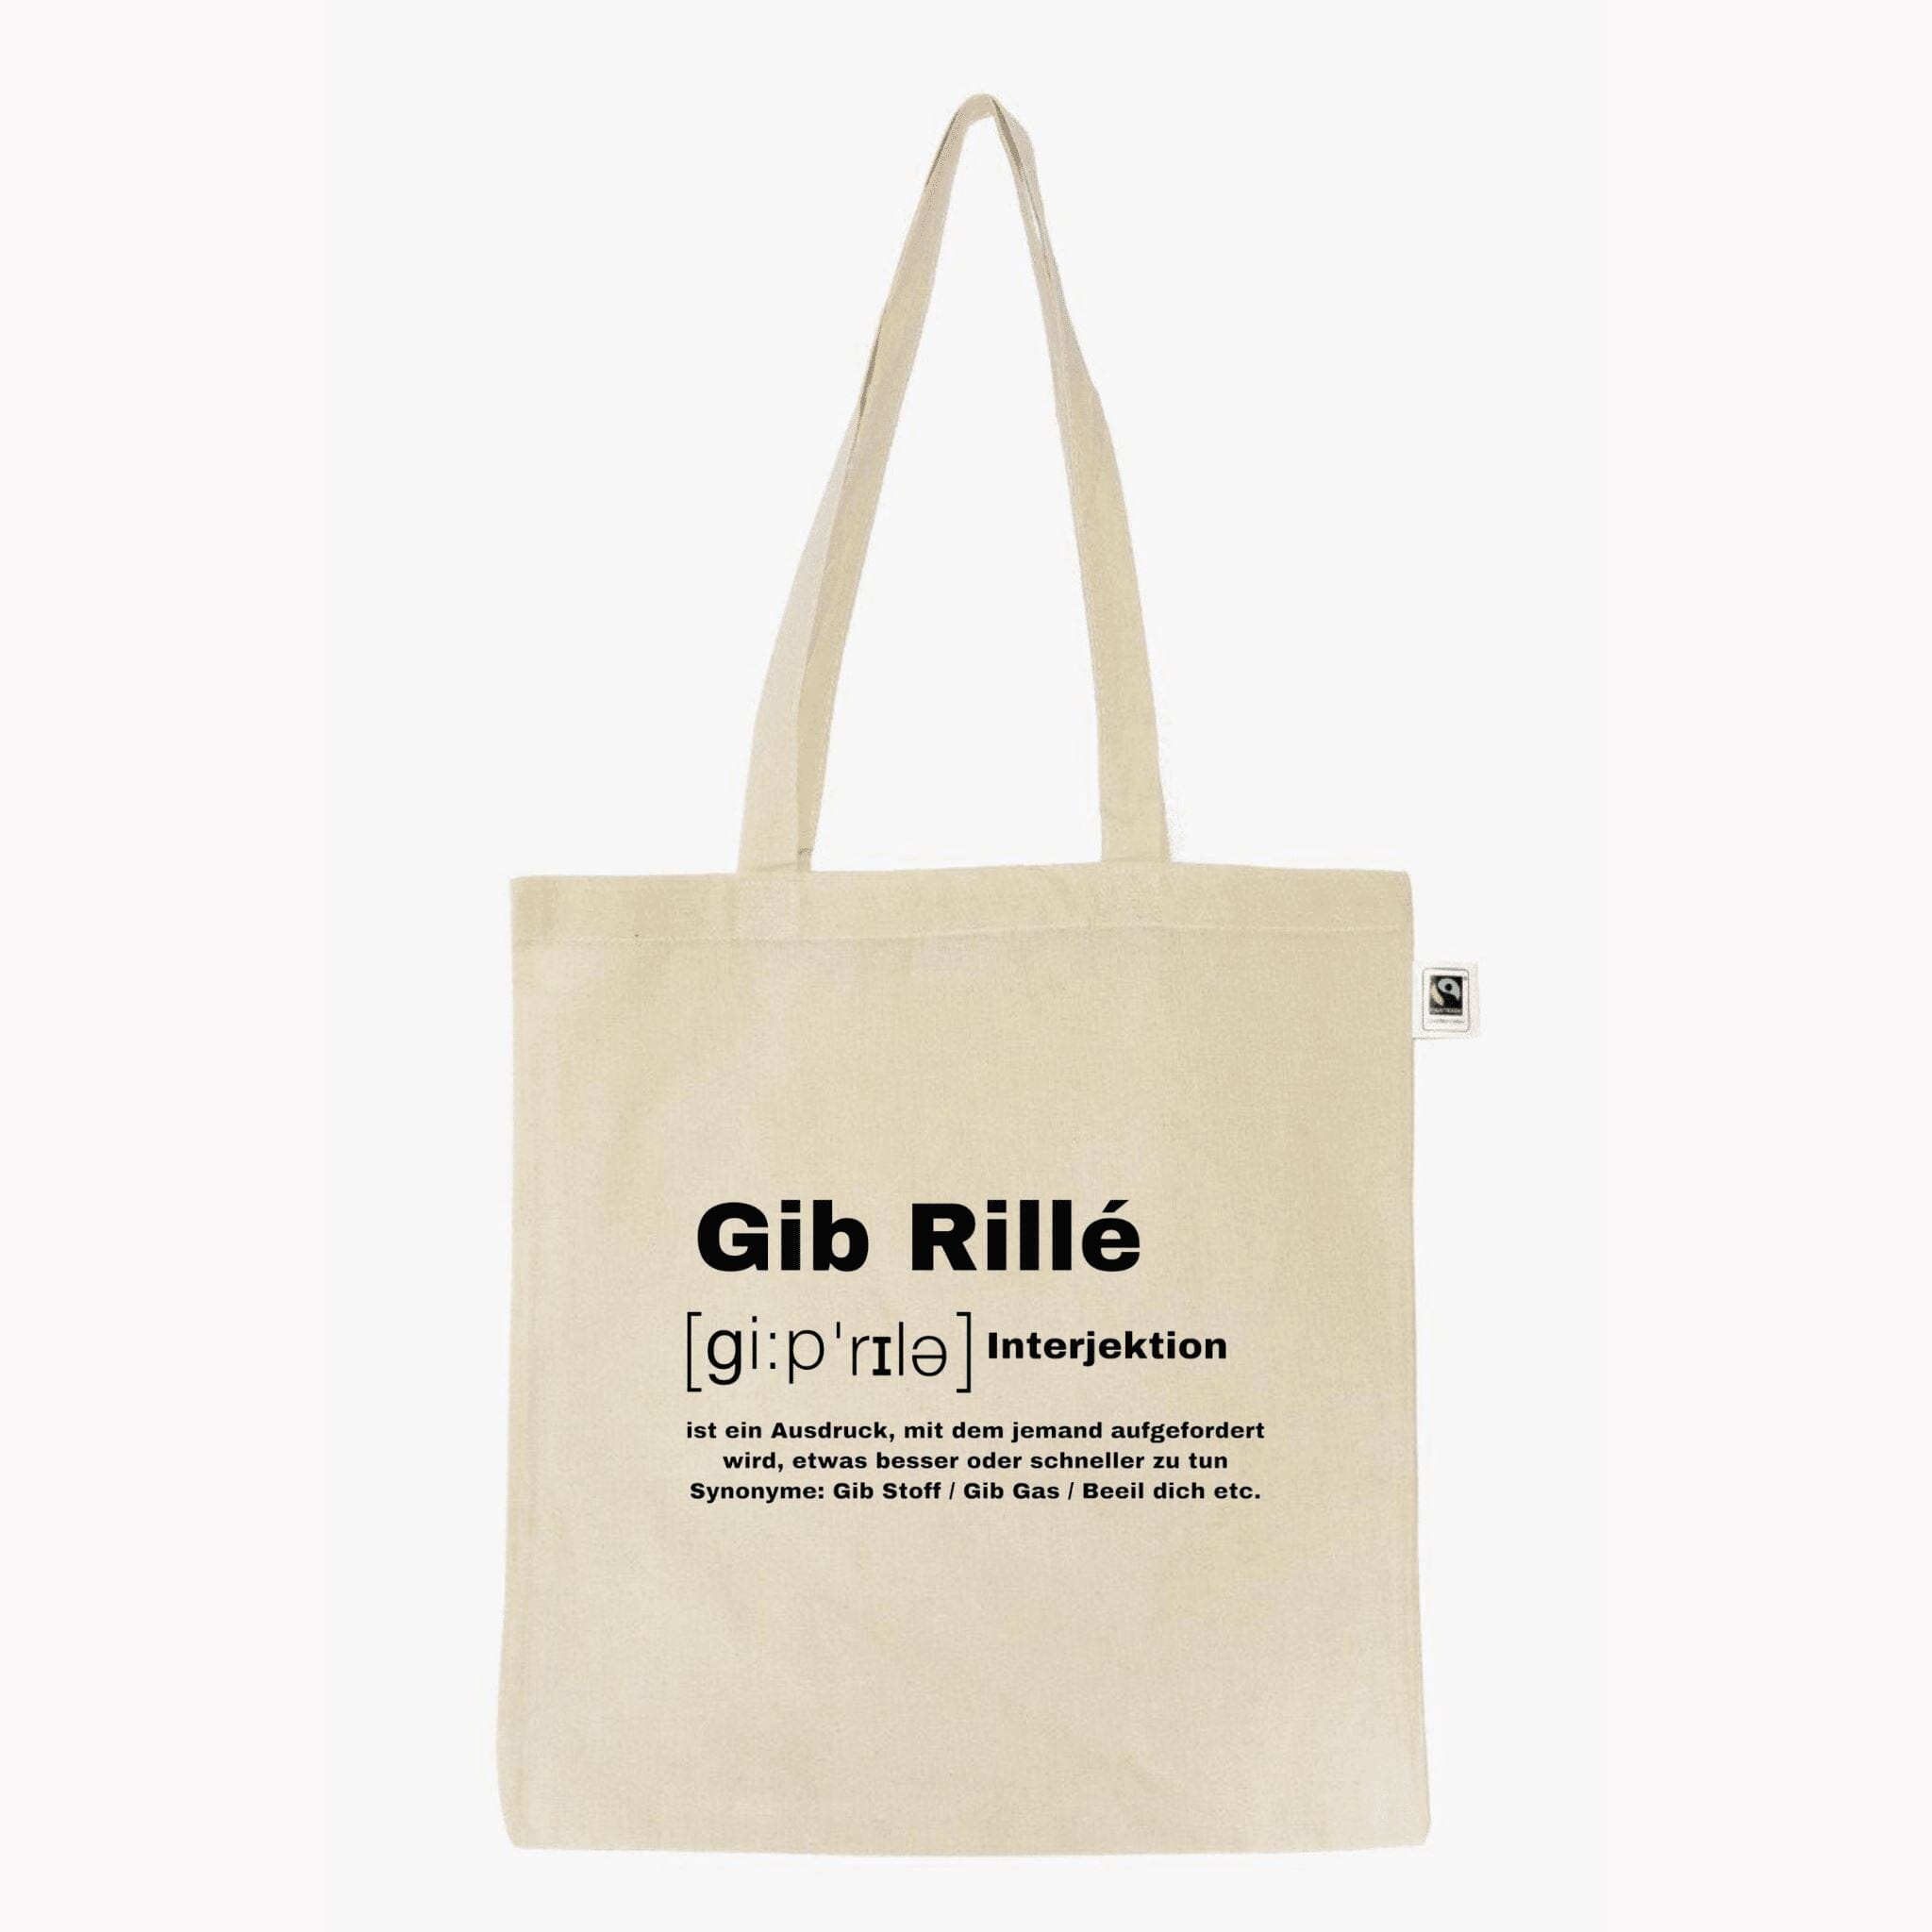 Gib Rillé Definitions Bag - 100% Baumwolle in Beige mit schwarzem Defintion Logo